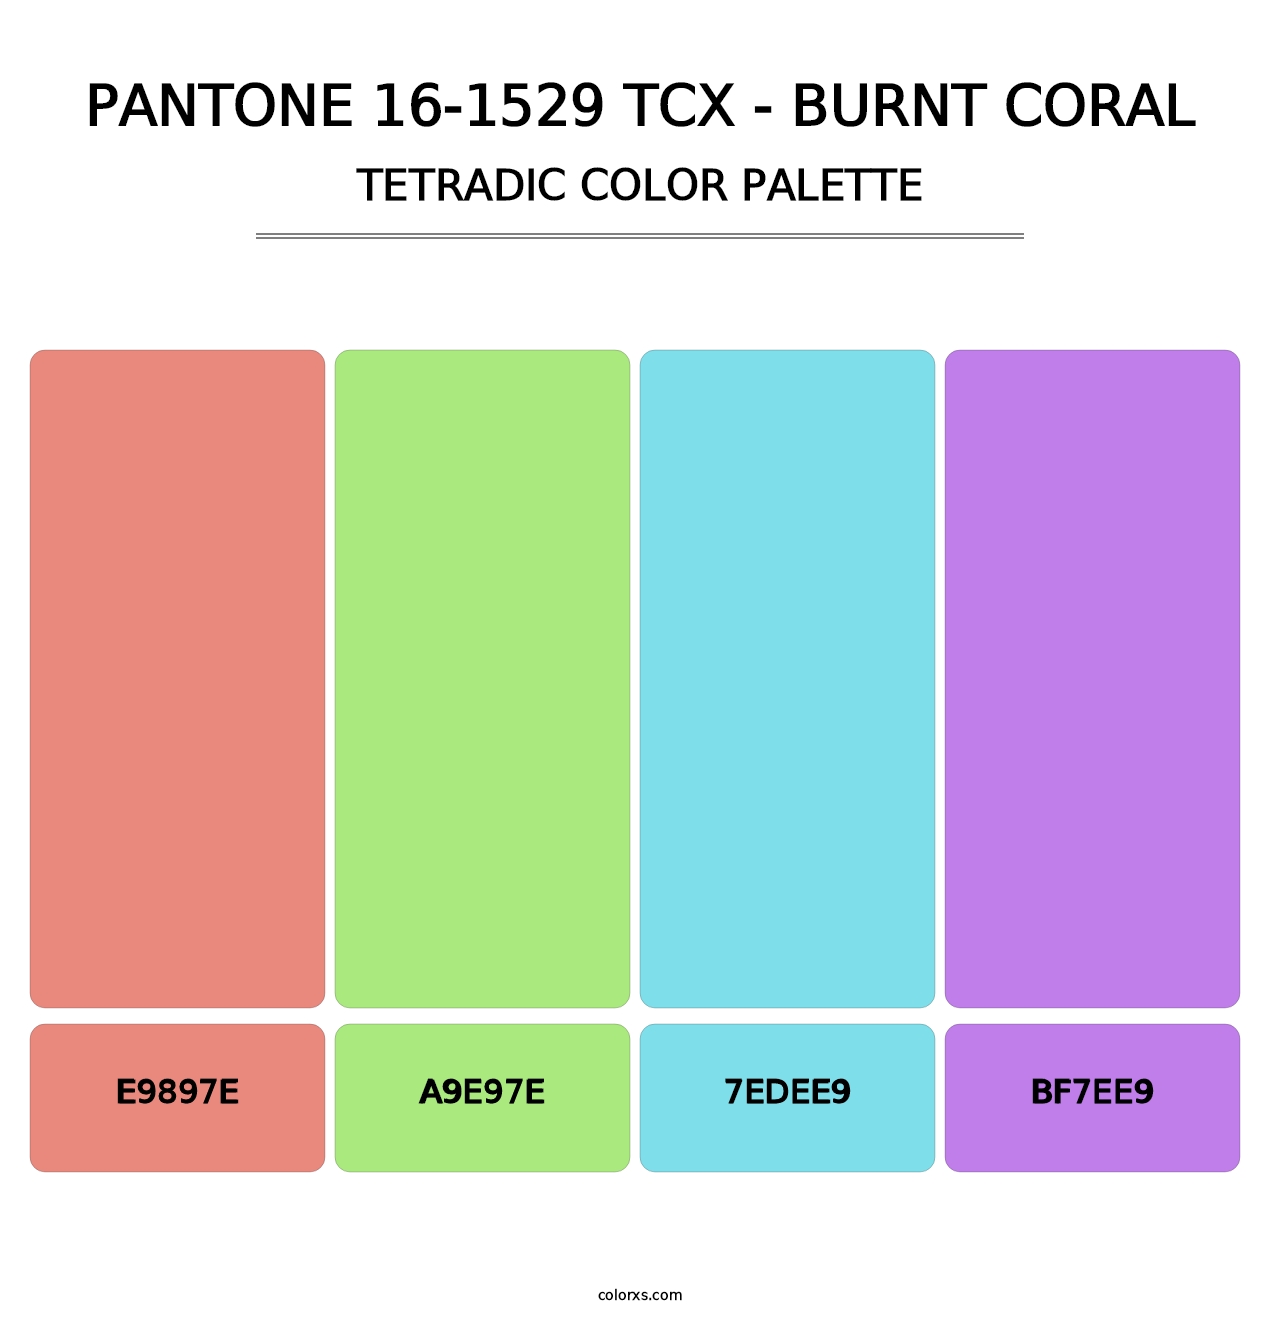 PANTONE 16-1529 TCX - Burnt Coral - Tetradic Color Palette